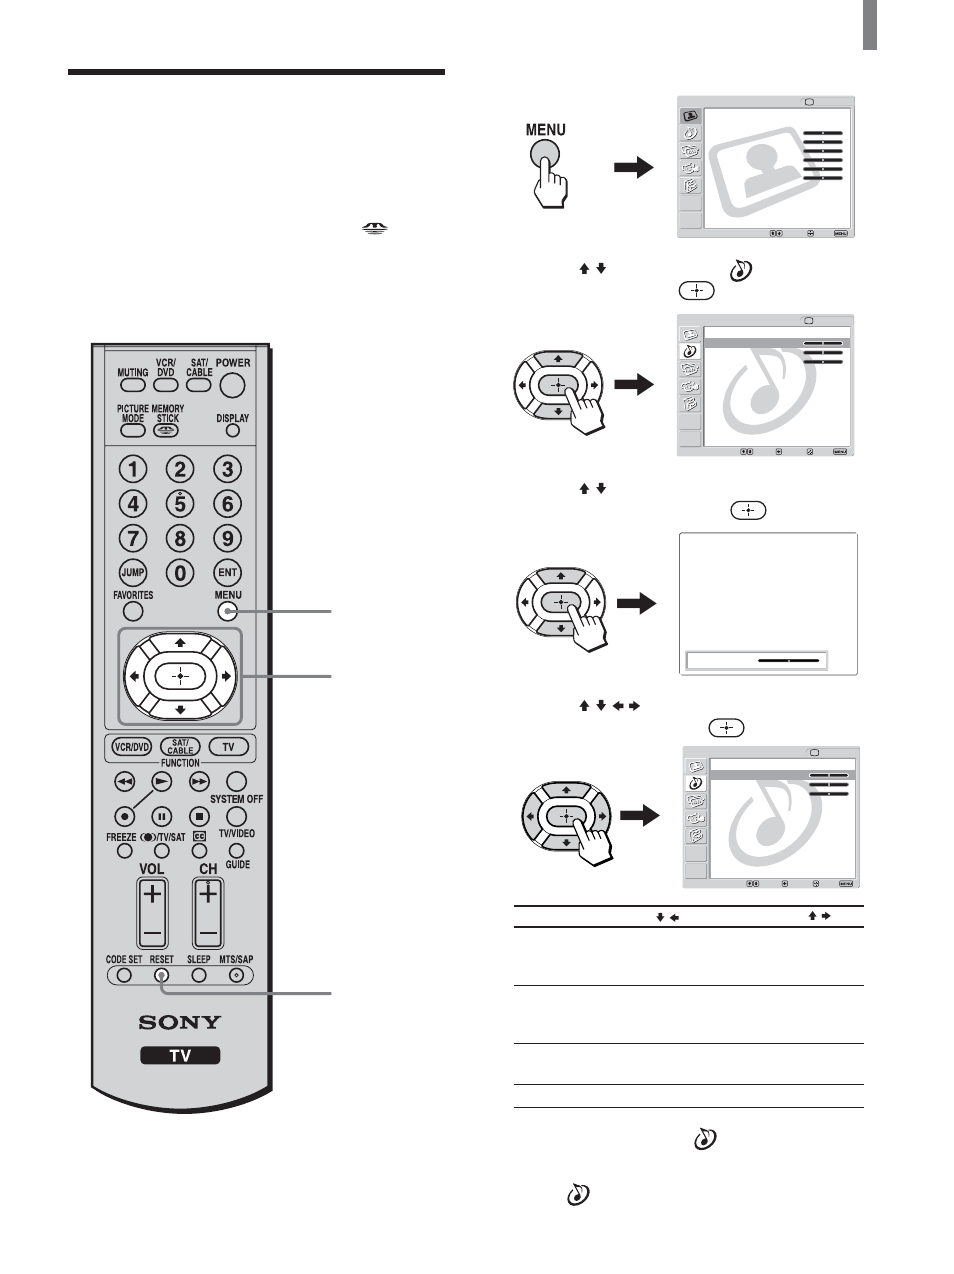 Ajuste de la calidad del sonido, Presione menu, Continúa) | Sony KLV-21SG2 Manual del usuario | Página 39 / 80